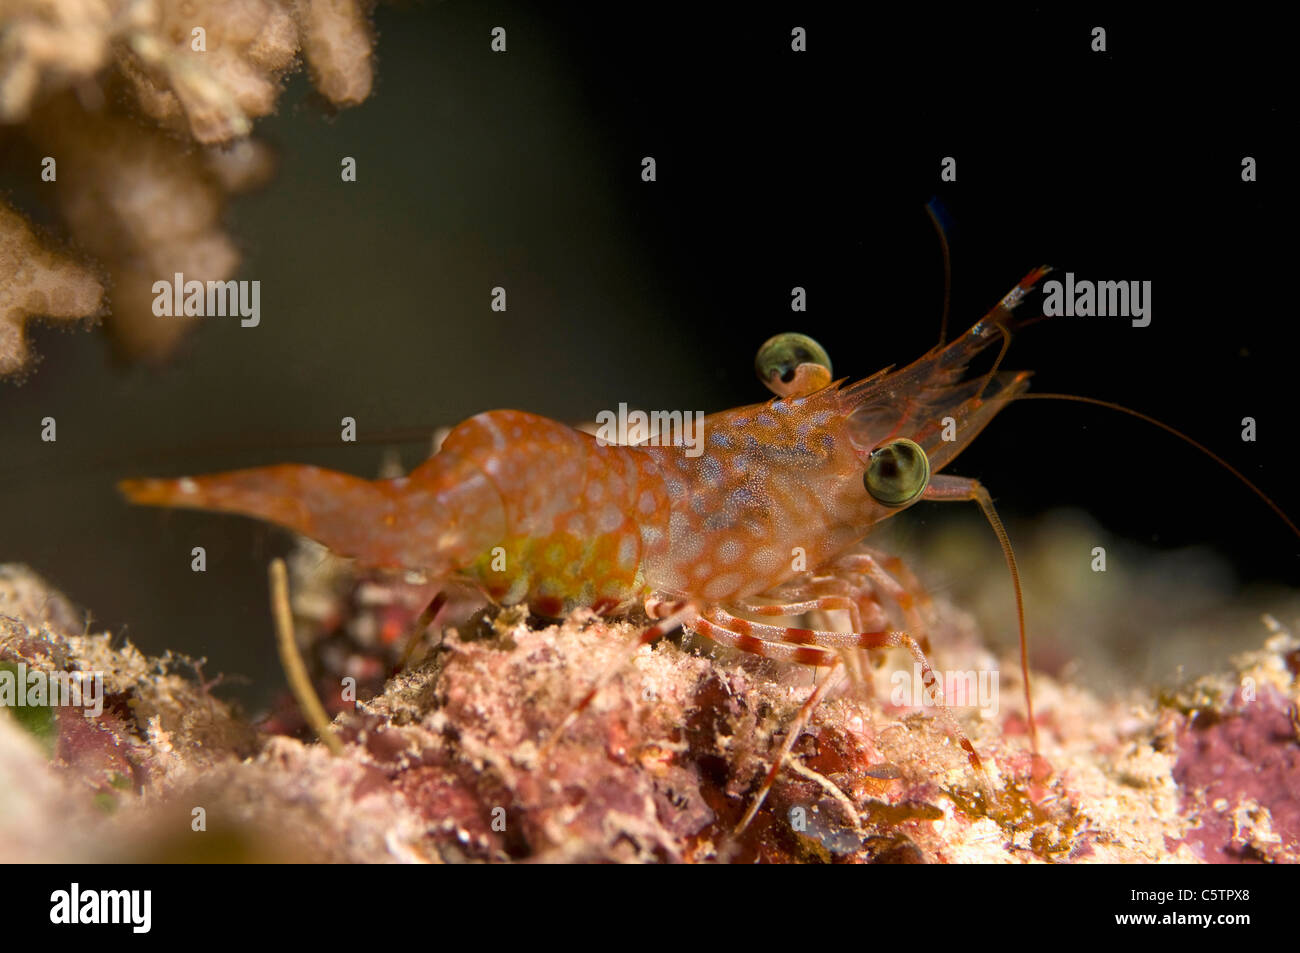 Egypt, Red Sea, Hendersons hinge-beak shrimp (Cinetorhynchus hendersoni) Stock Photo